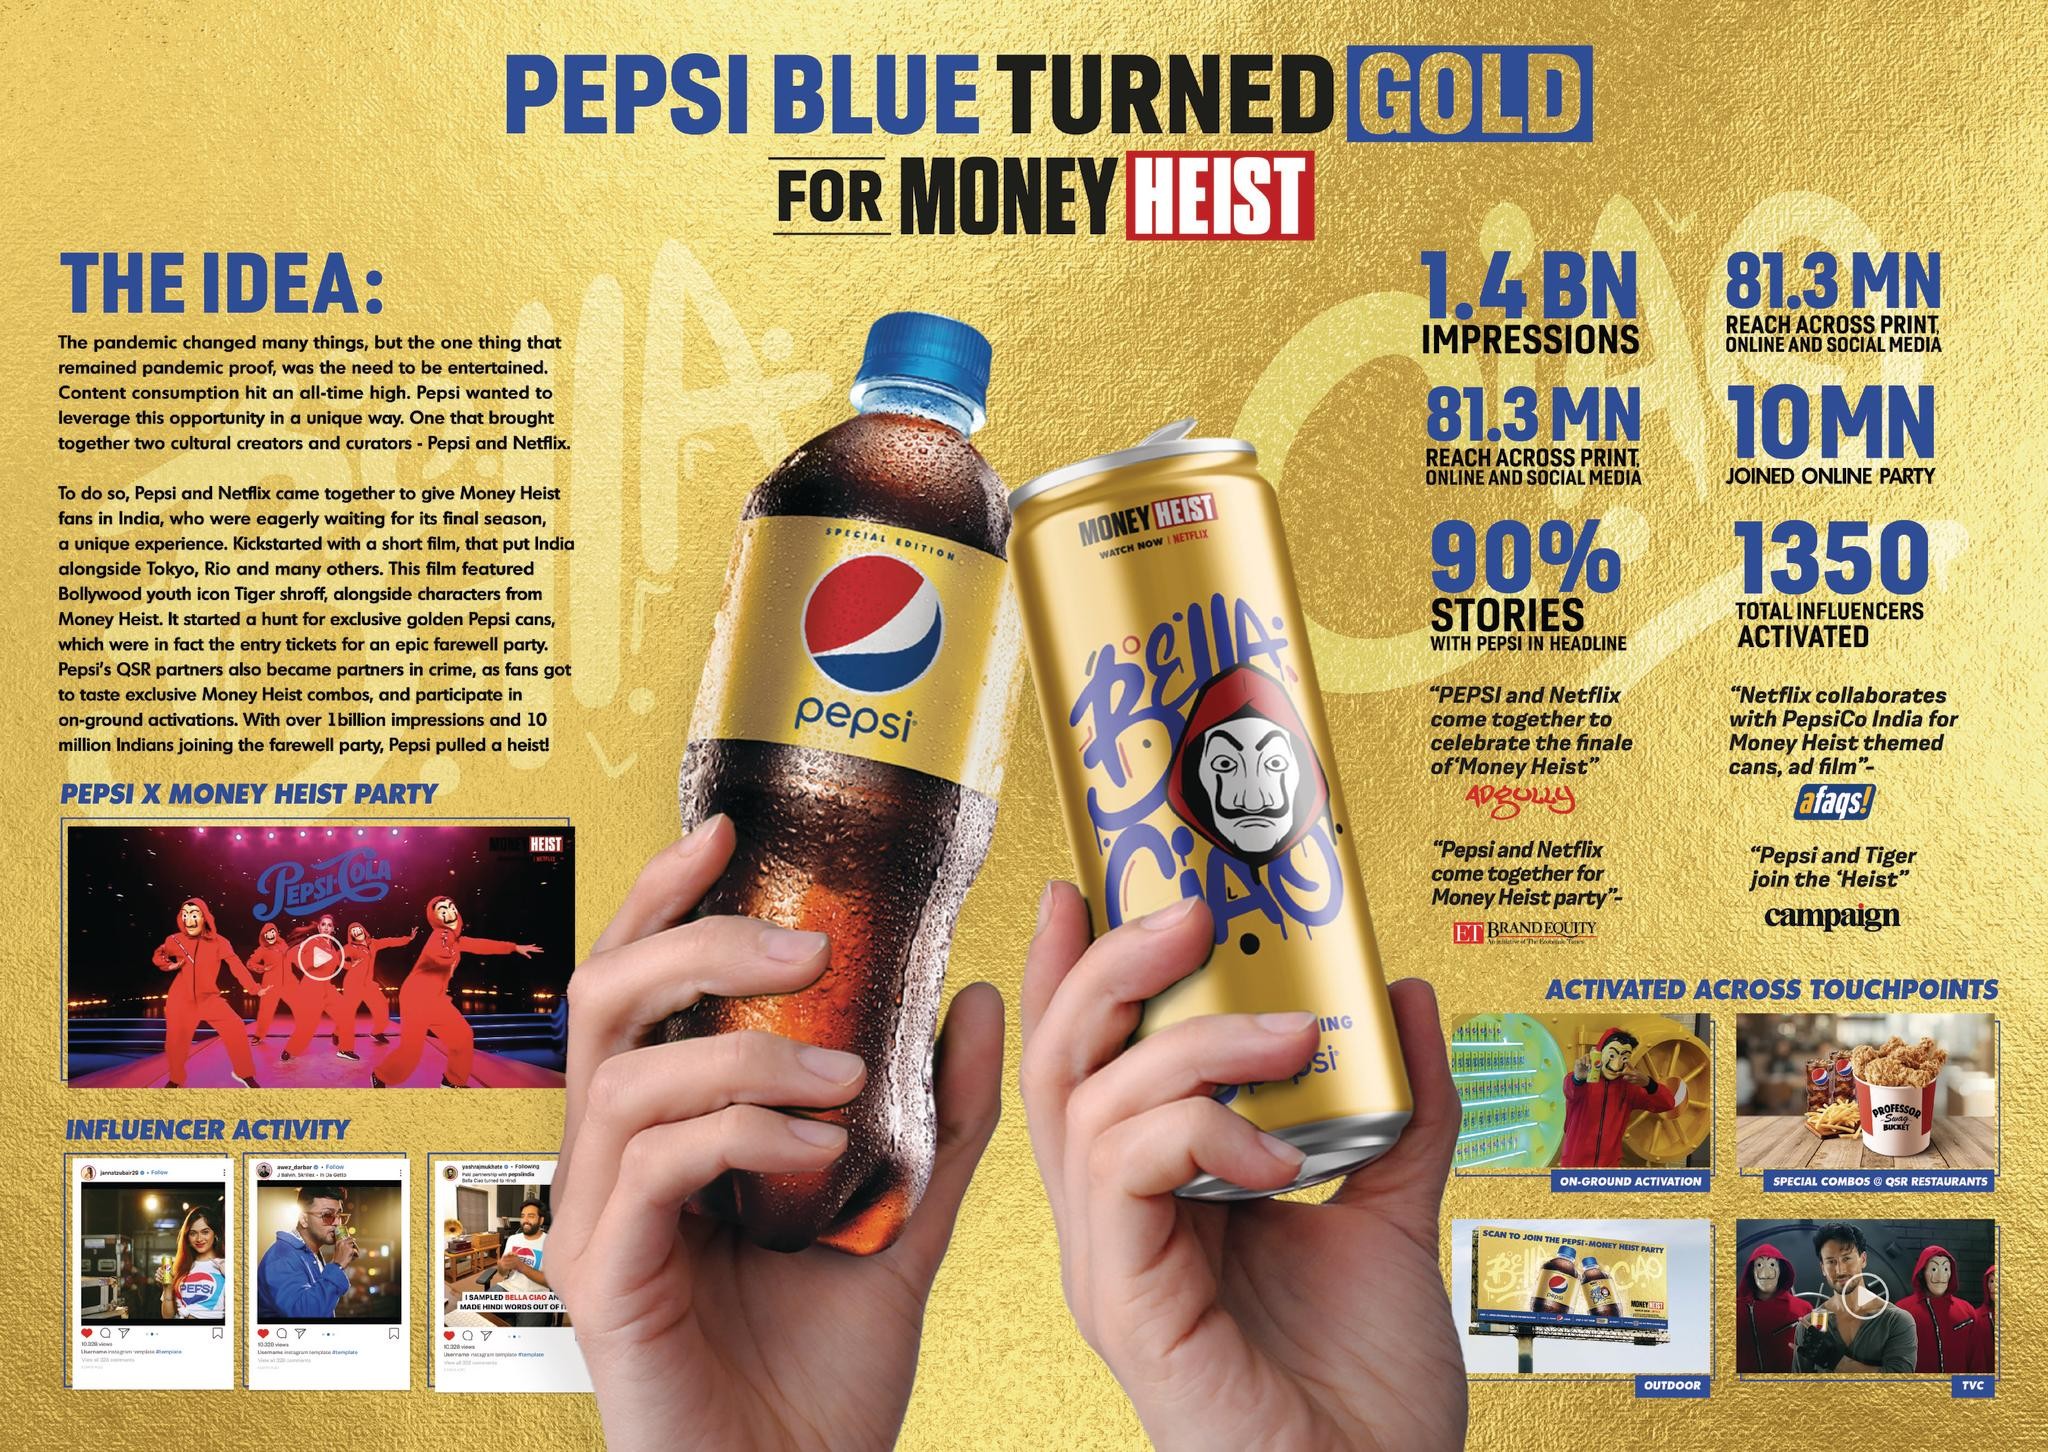 Pepsi Turns Gold For Money Heist